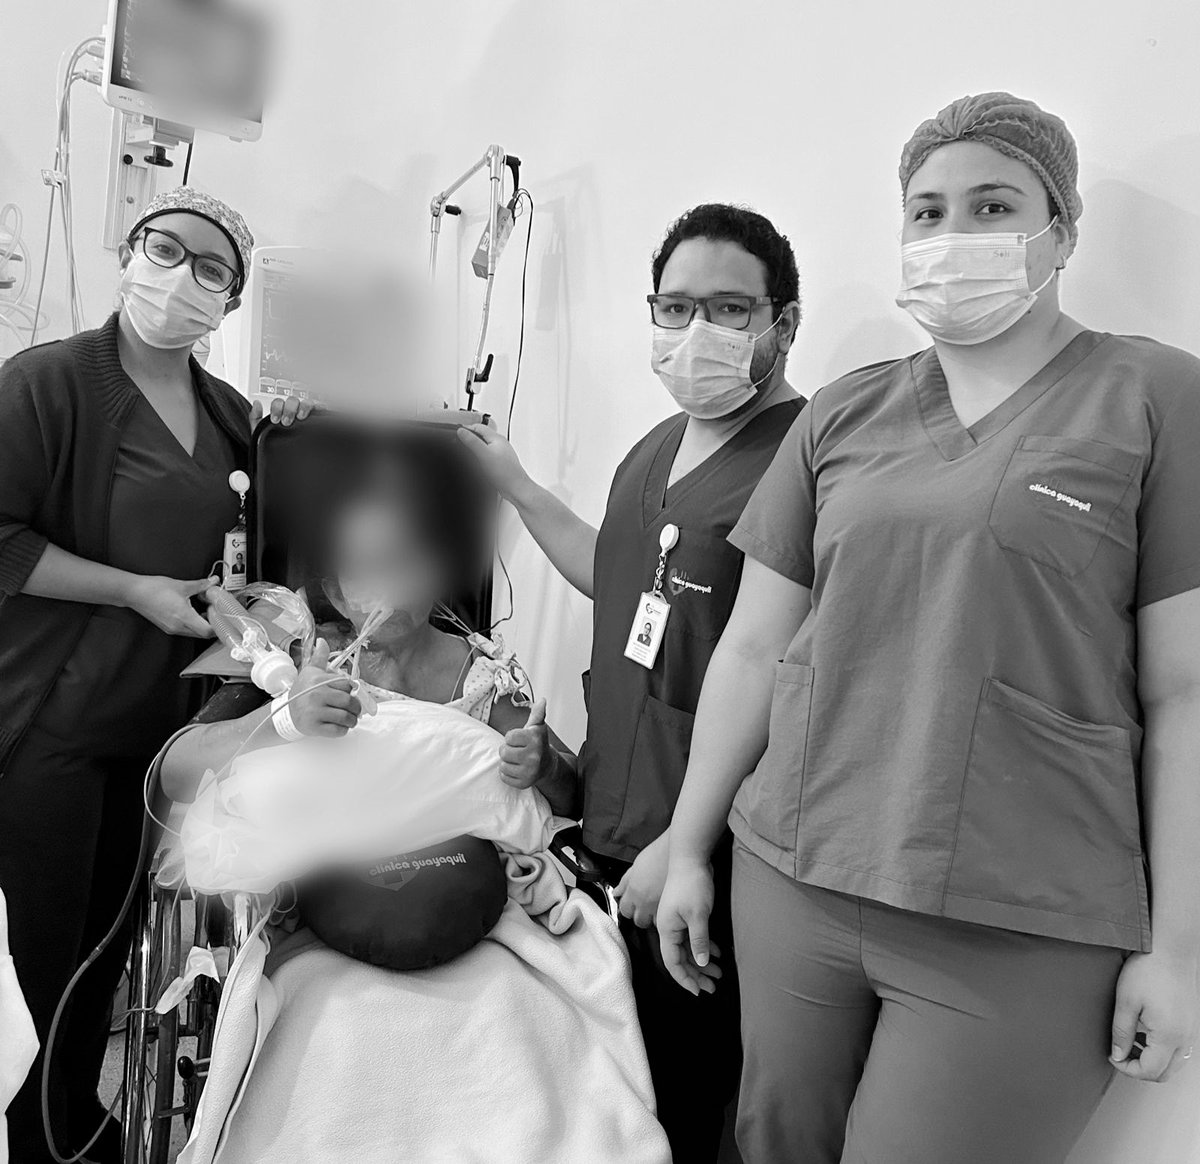 Así trabaja terapia física Lcda. Erika Andrade & terapia respiratoria Lcda. Lucy Bulgarín en la Unidad de Cuidados Críticos Cardiacos🫀 de Clínica Guayaquil 🏥 

Movilización de paciente bajo todo tipo de soporte, esta vez con ventilación invasiva.
También #ECMO #IABP, ya lo han…